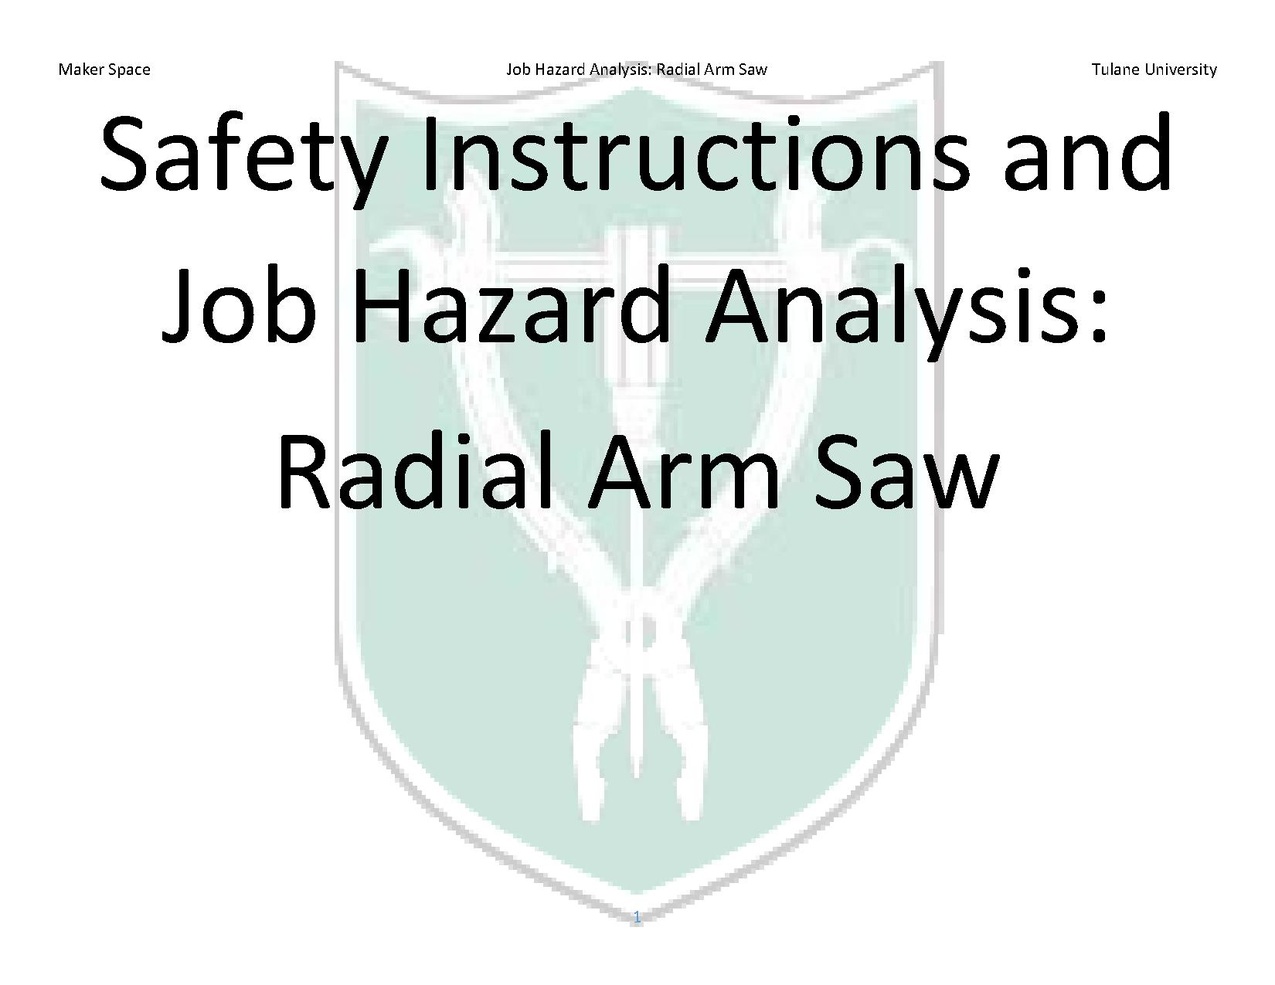 Radial Arm Saw JHA 2017 03 04.pdf